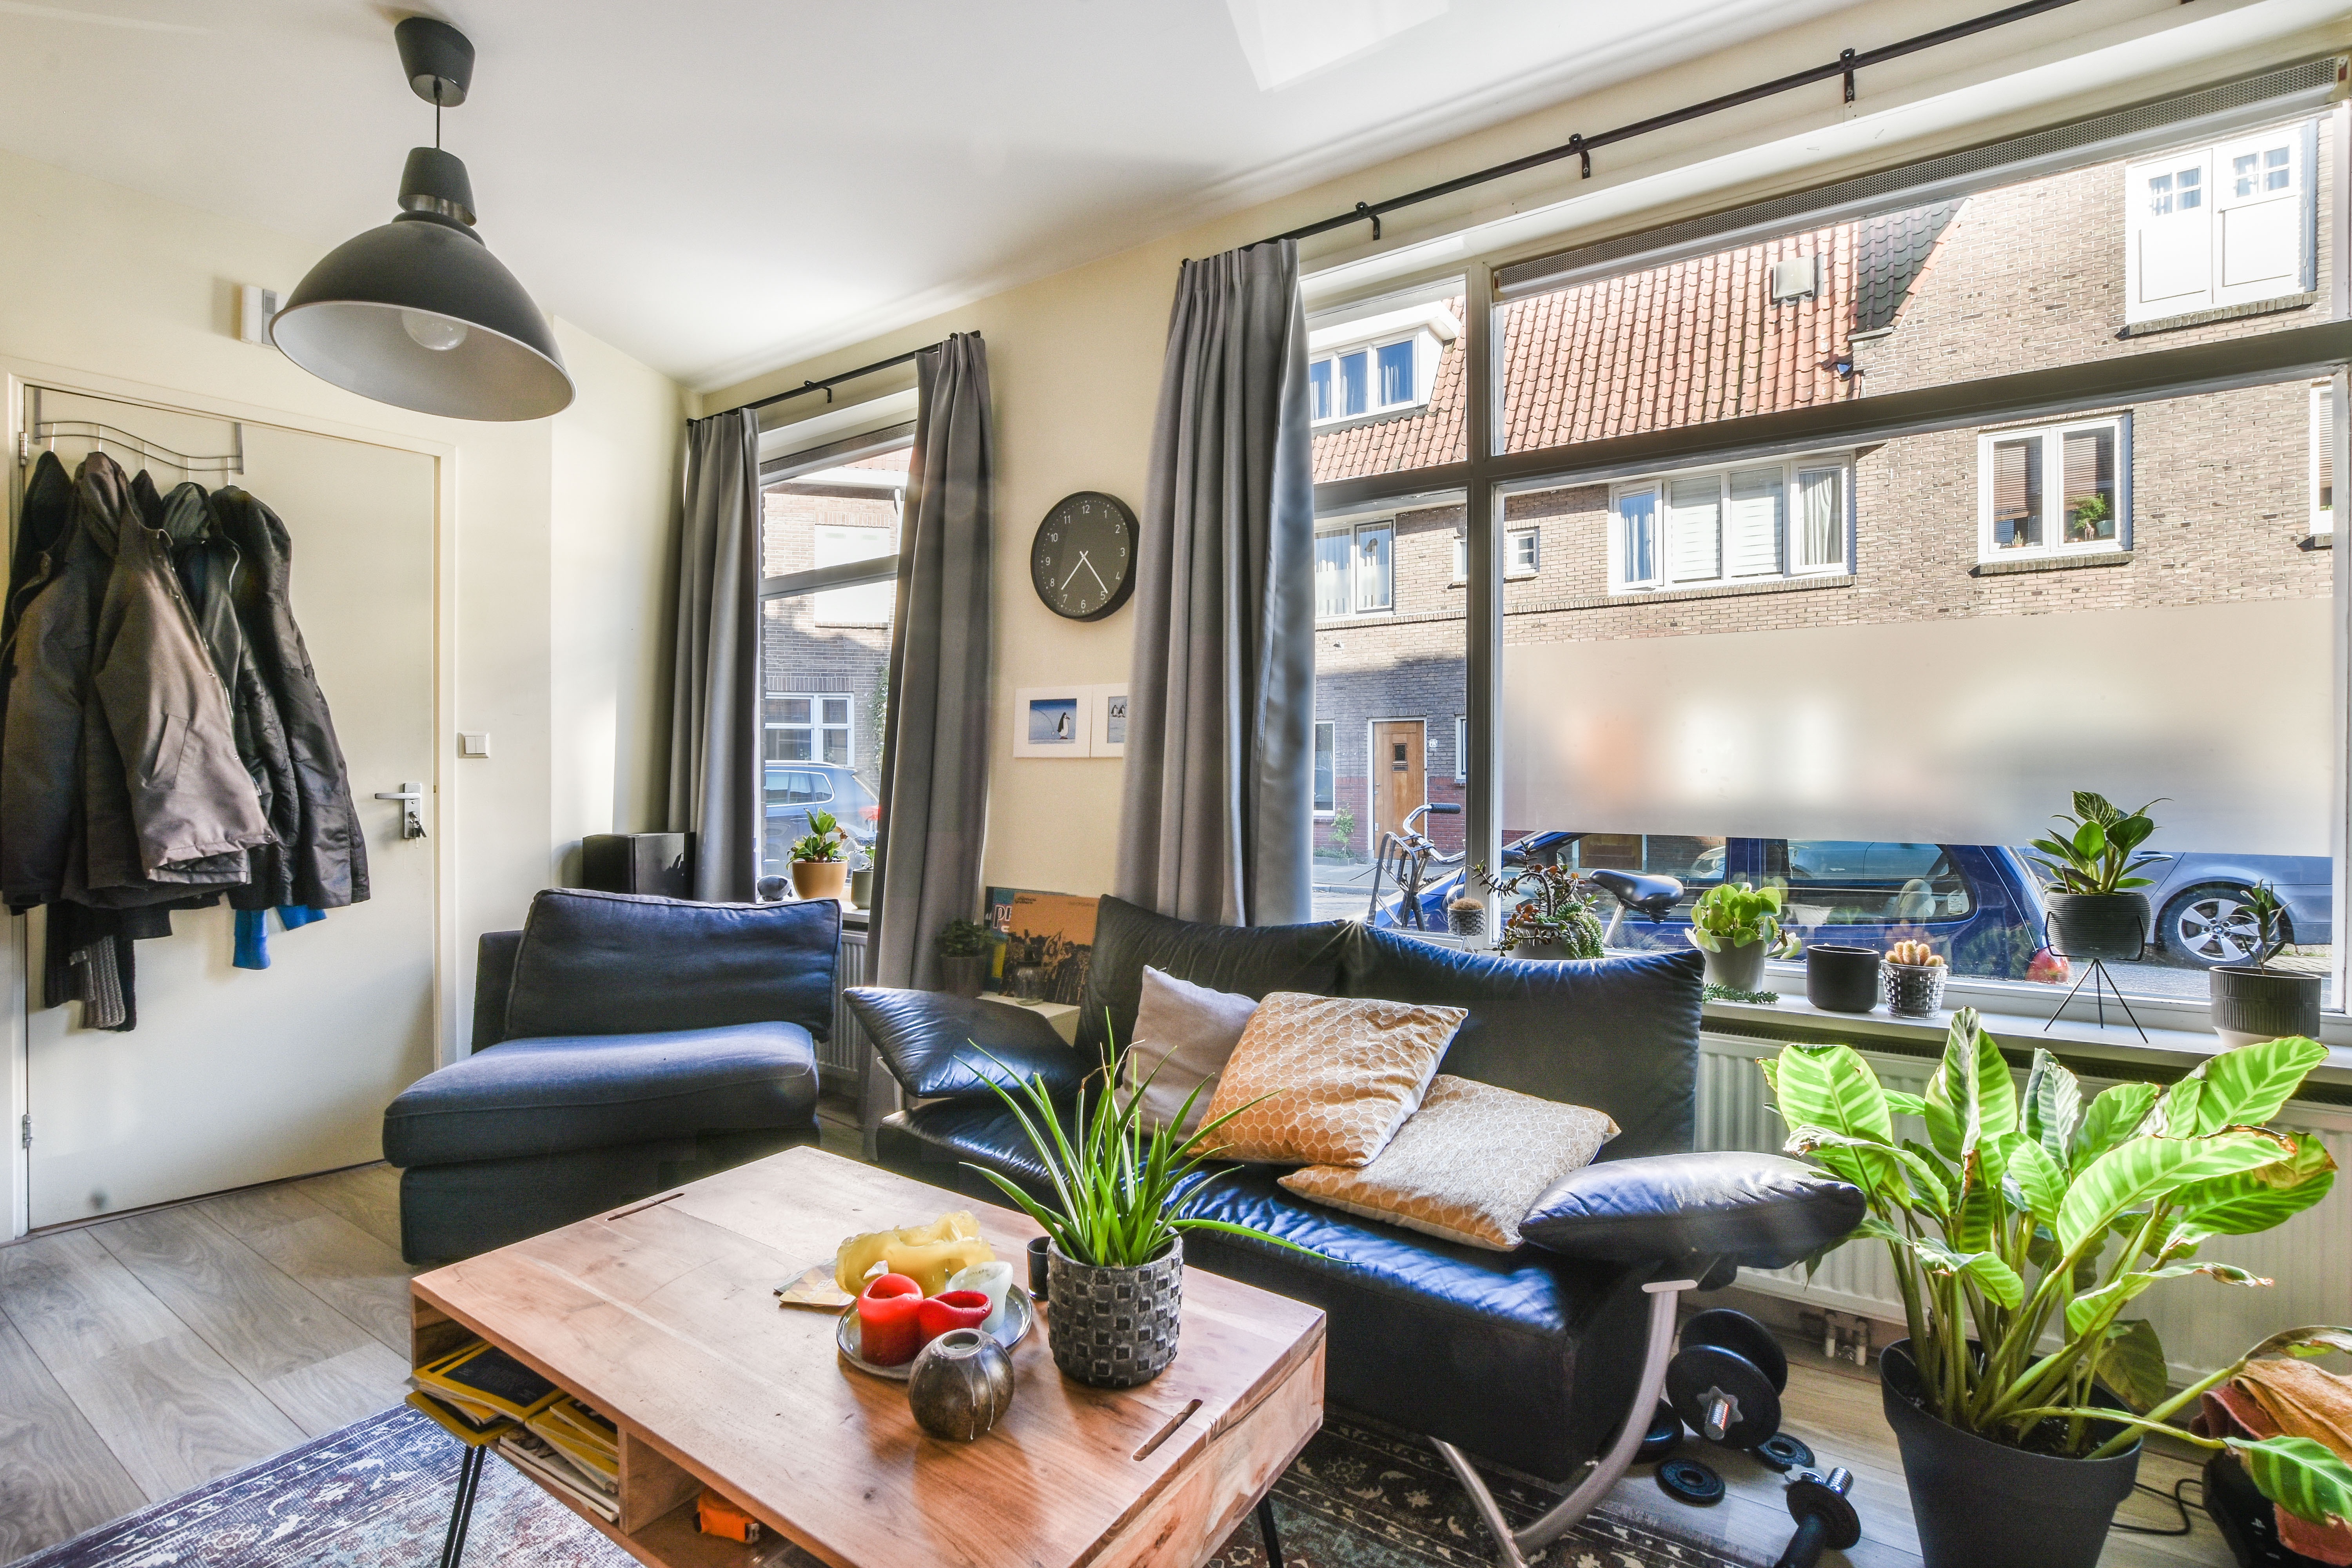 Woning / appartement - Utrecht - Jacob van der Borchstraat 74